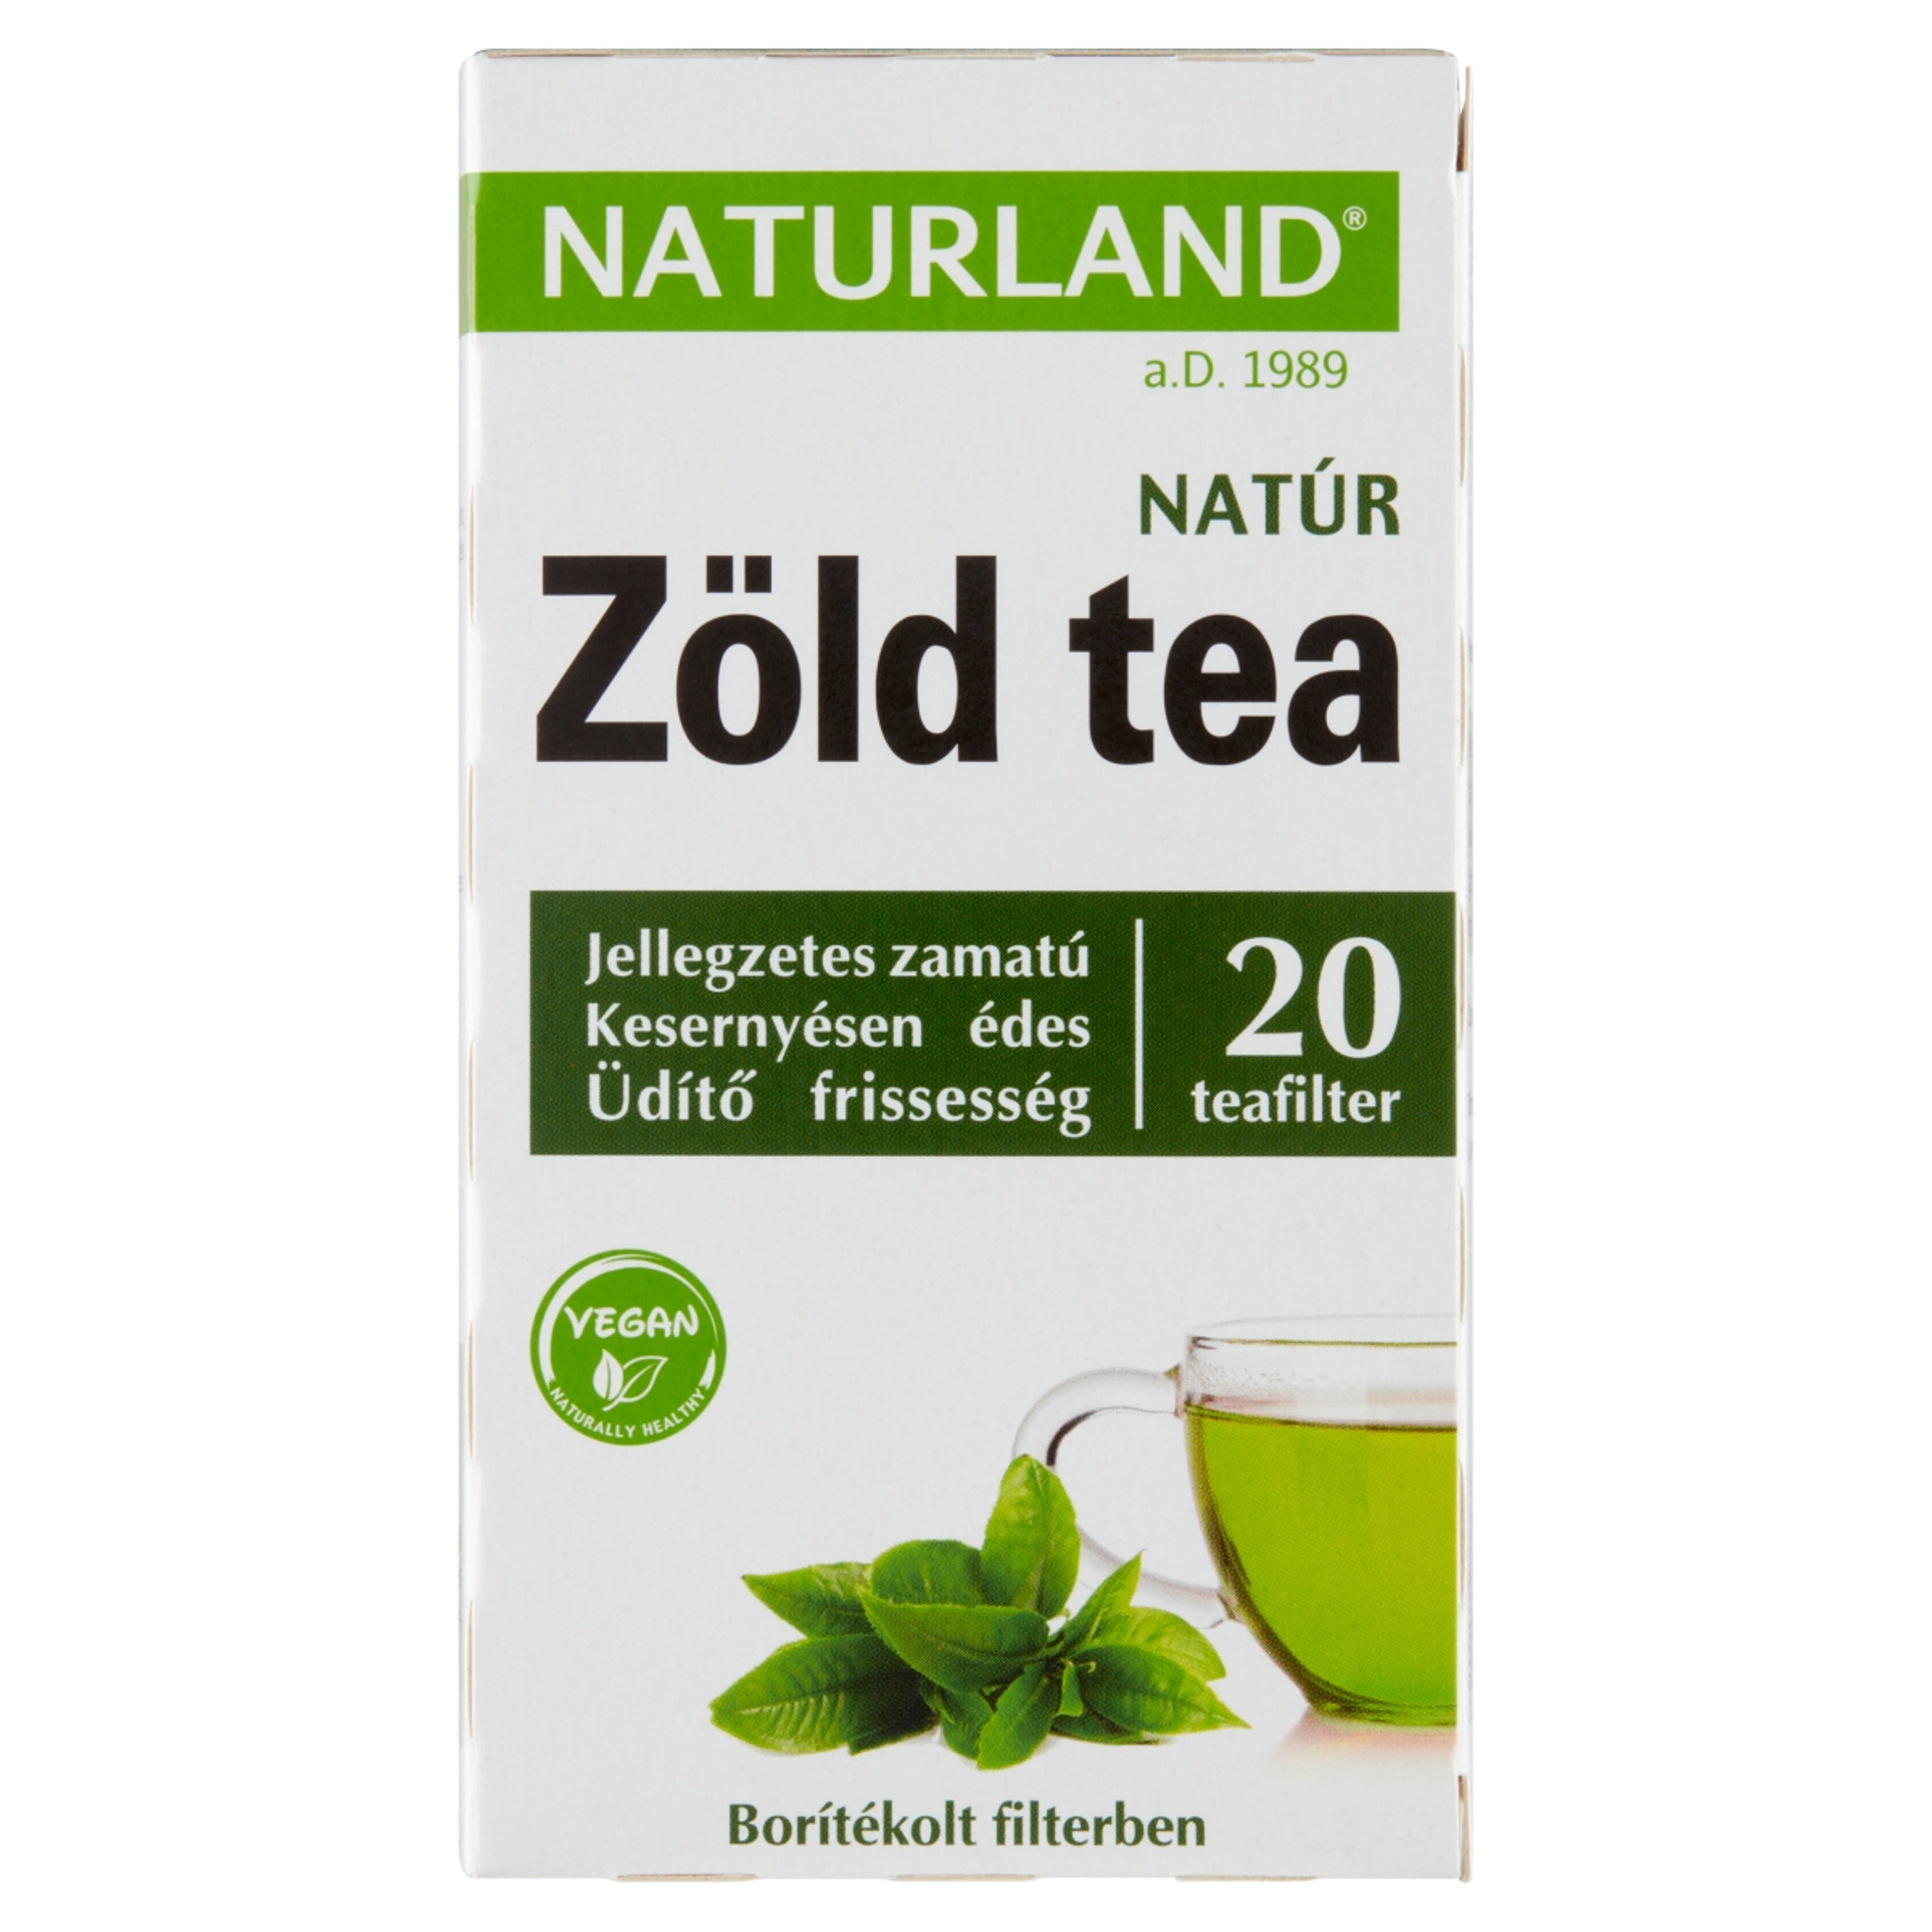 Naturland natúr zöld tea - 20 filter - 30 g